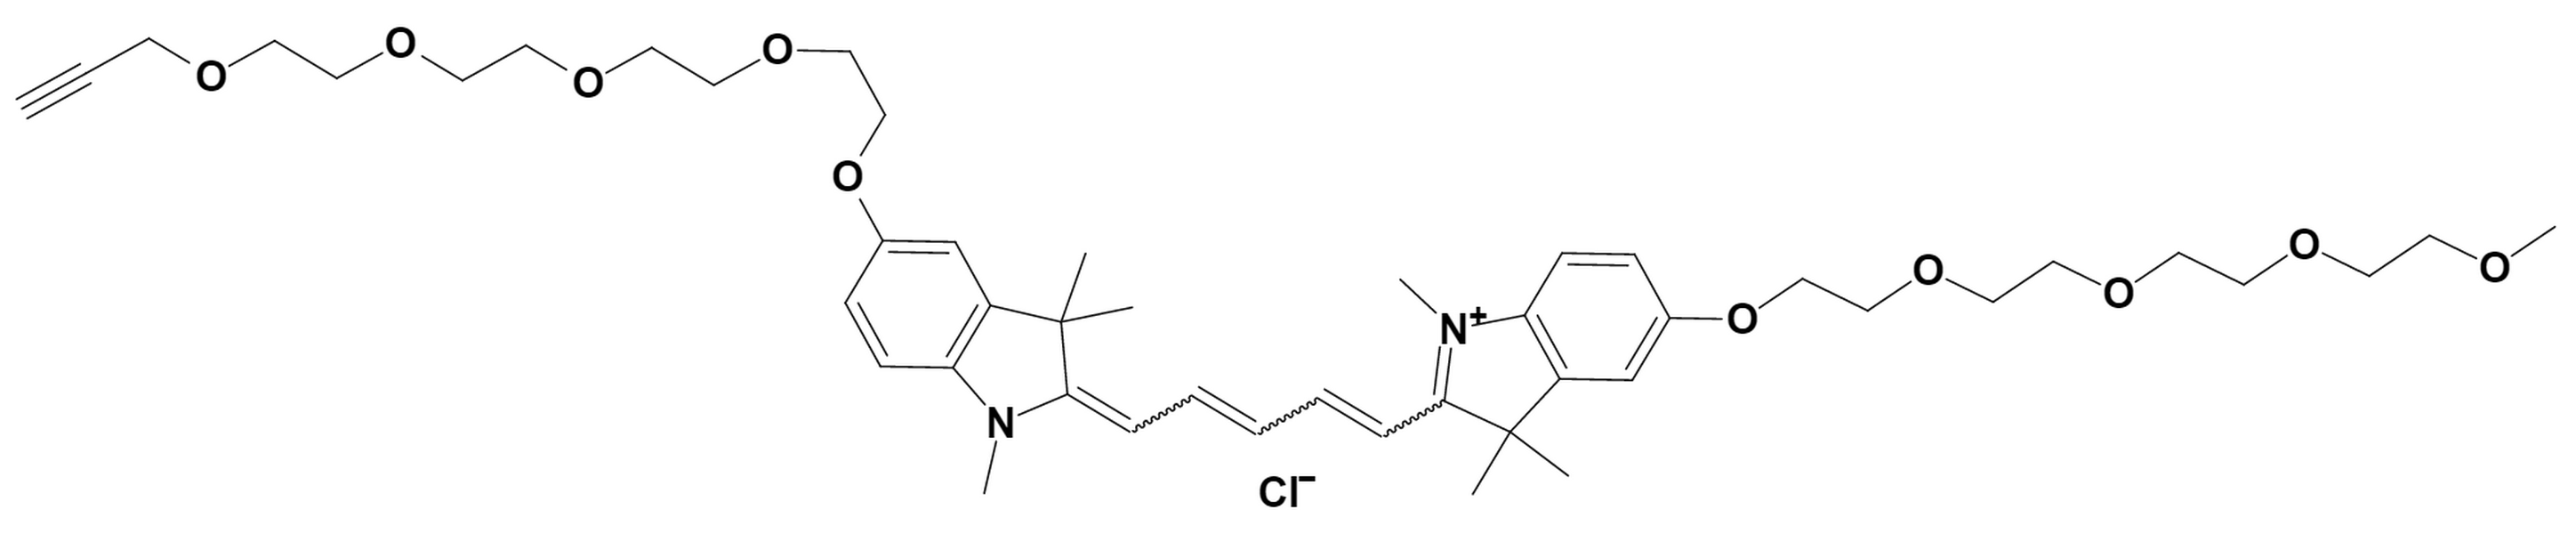 N-methyl-N'-methyl-O-(m-PEG4)-O'-(propargyl-PEG4)-Cy5